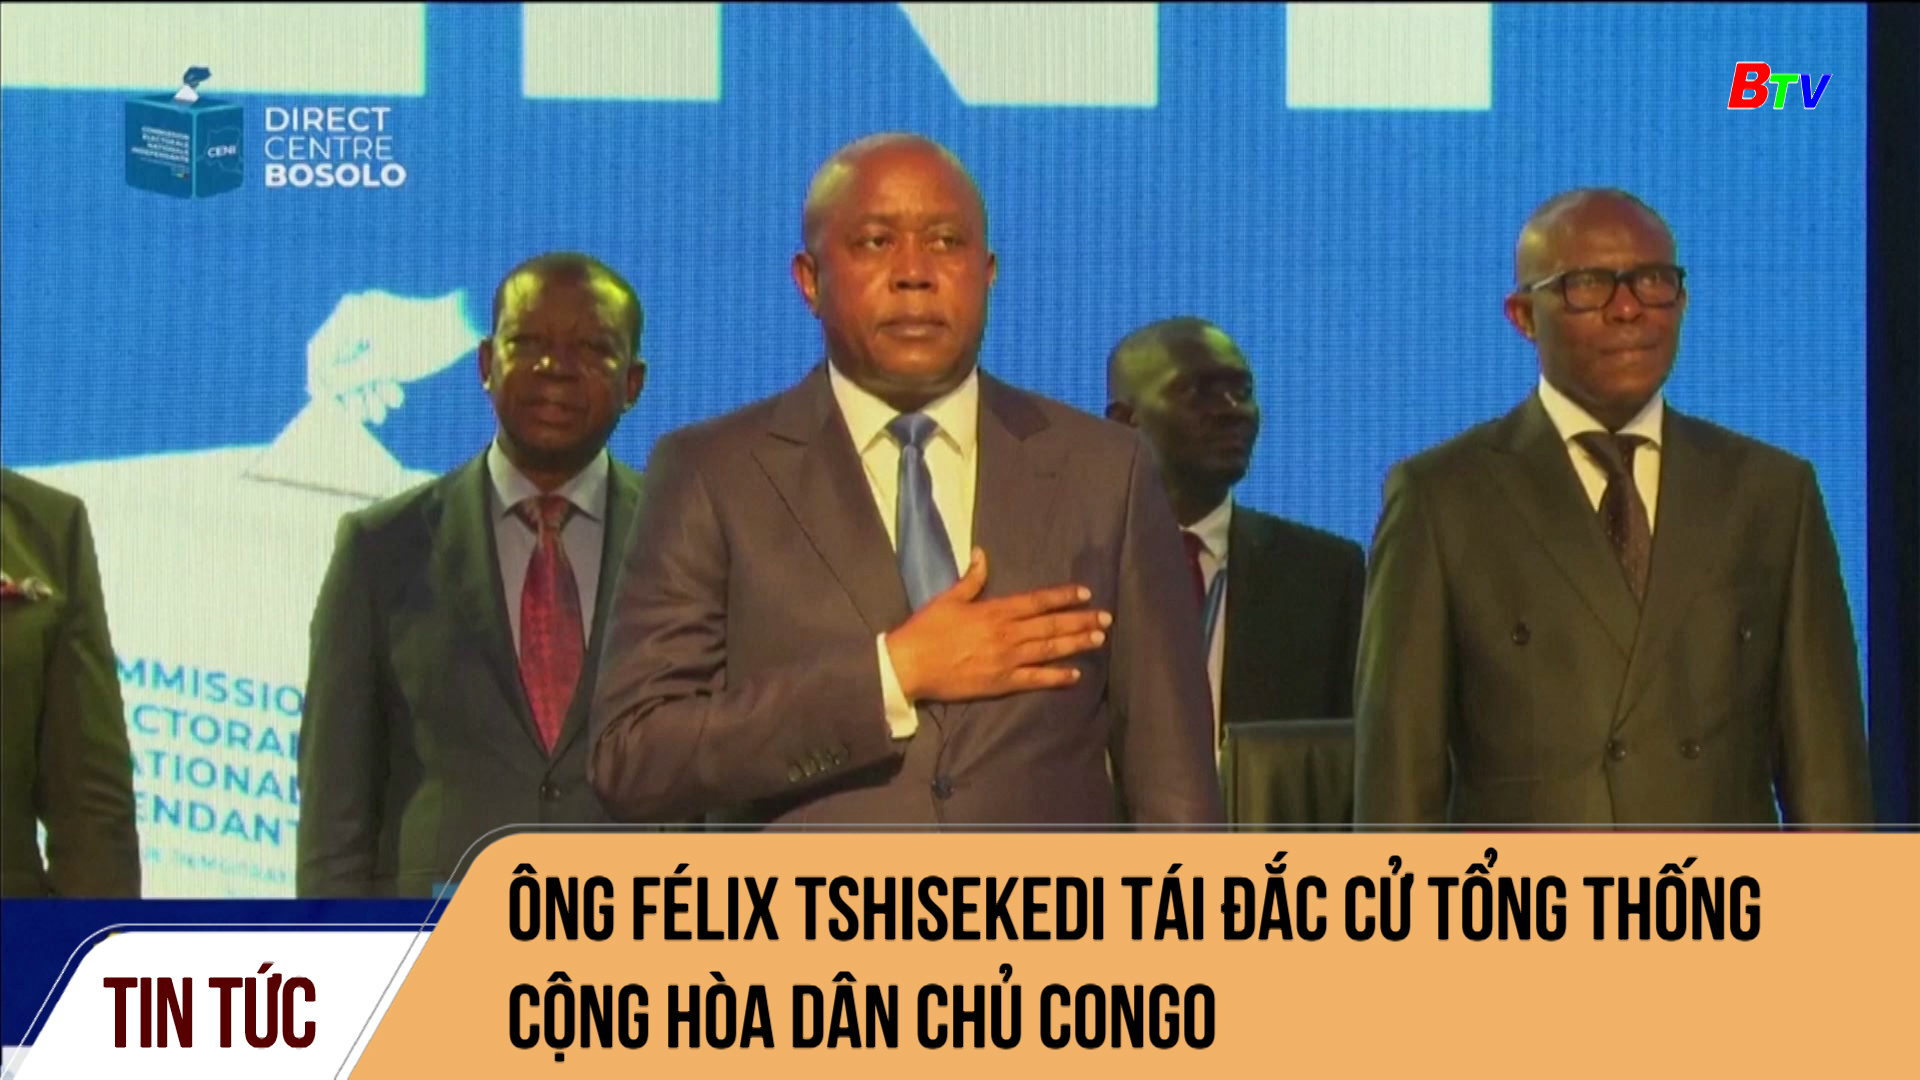 Ông Félix Tshisekedi tái đắc cử Tổng thống Cộng hòa Dân chủ Congo